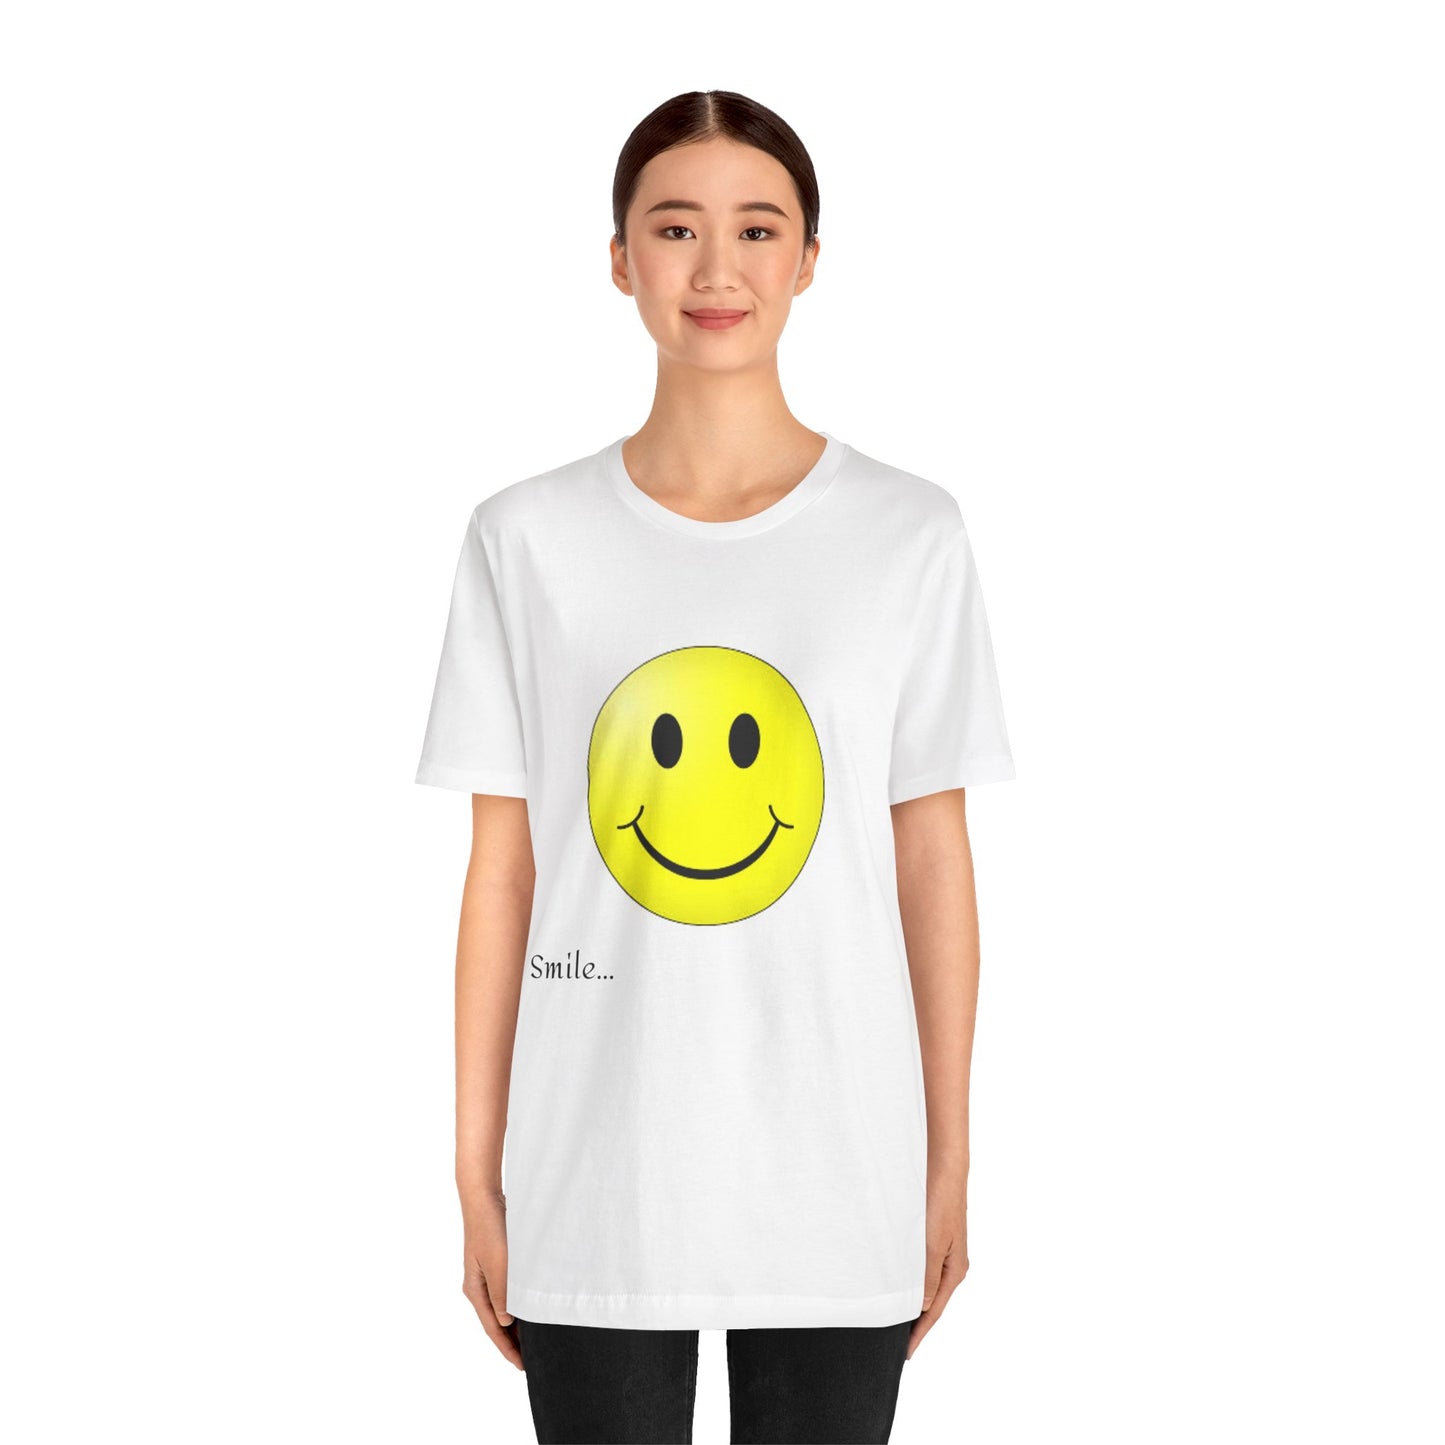 Camiseta unisex de manga corta con sonrisa